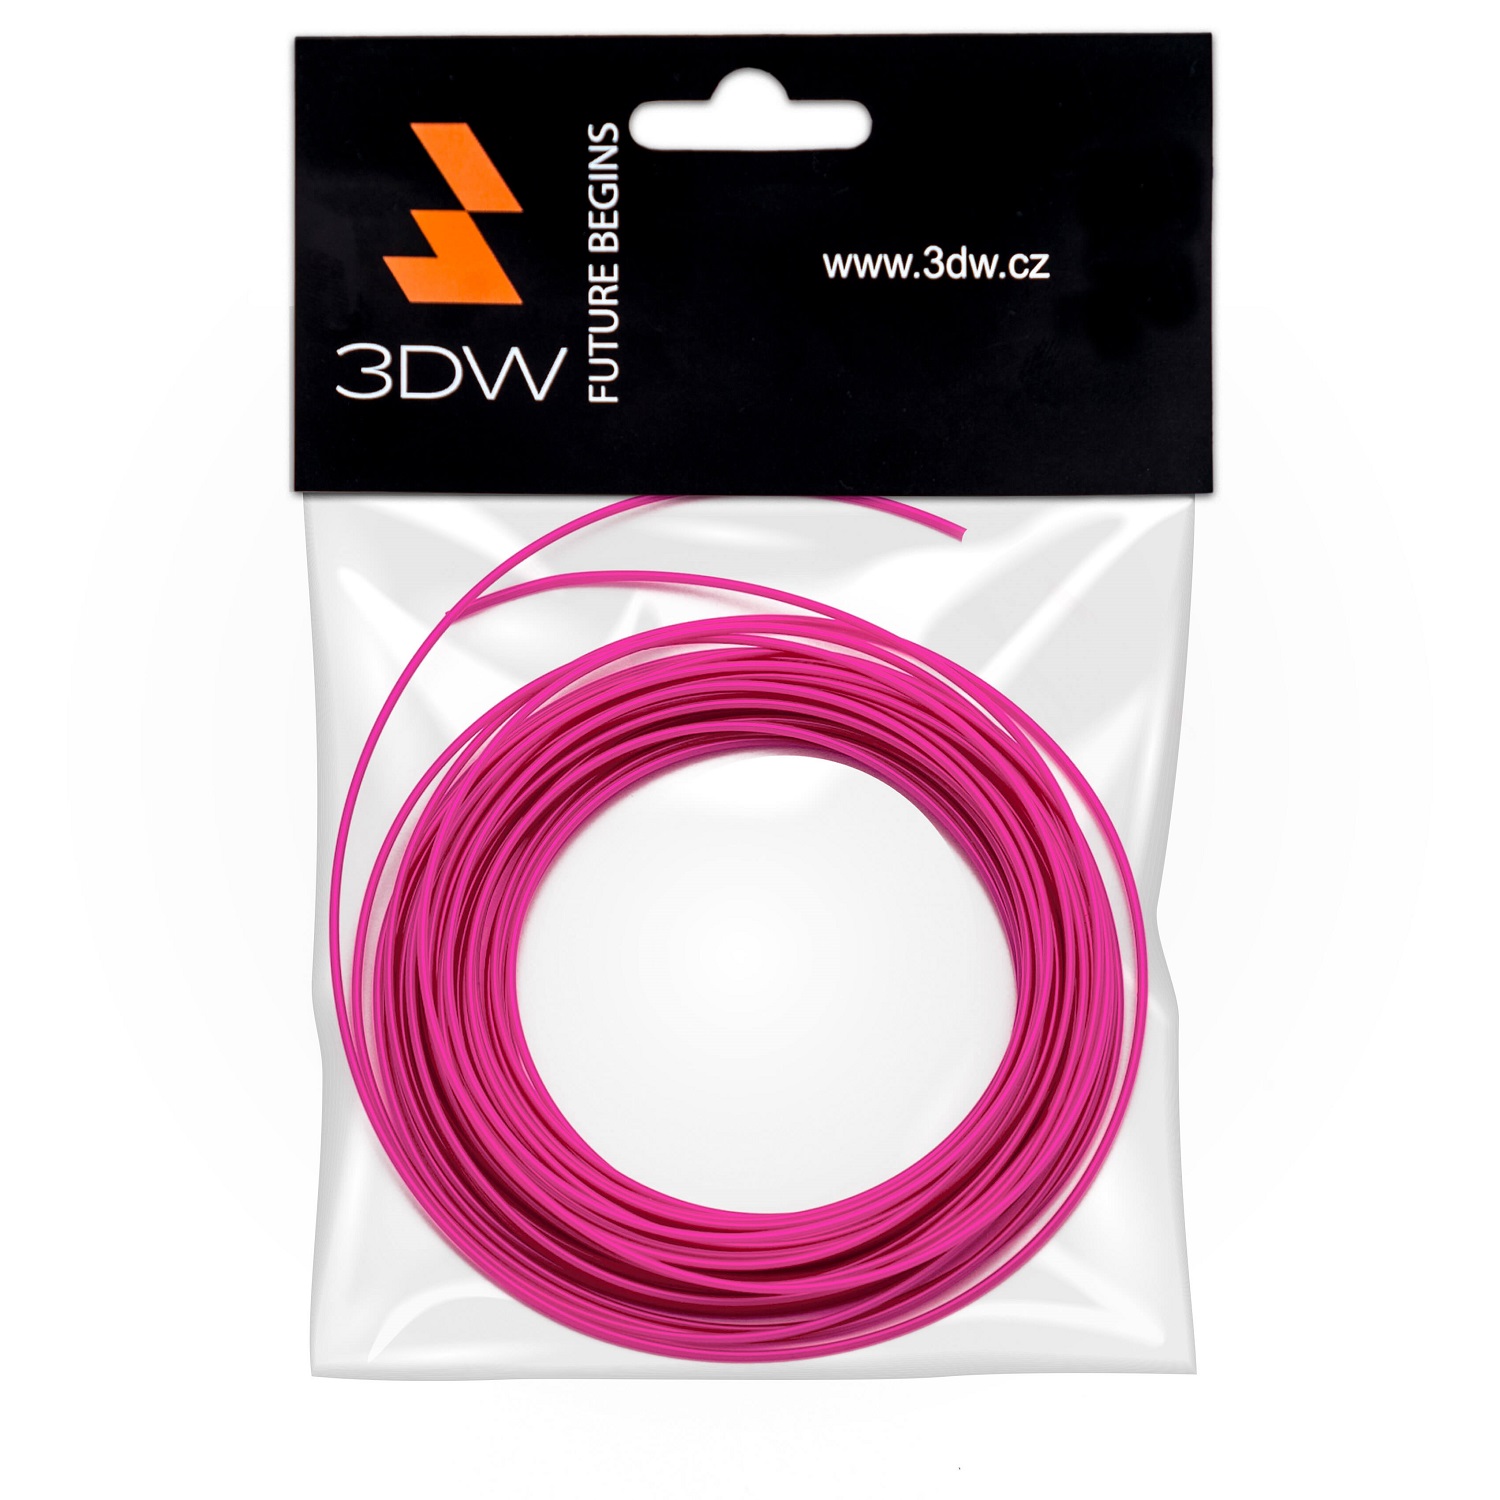 Tisková struna 3DW (filament) PLA, 1,75mm, 10m, růžová, 200-230°C